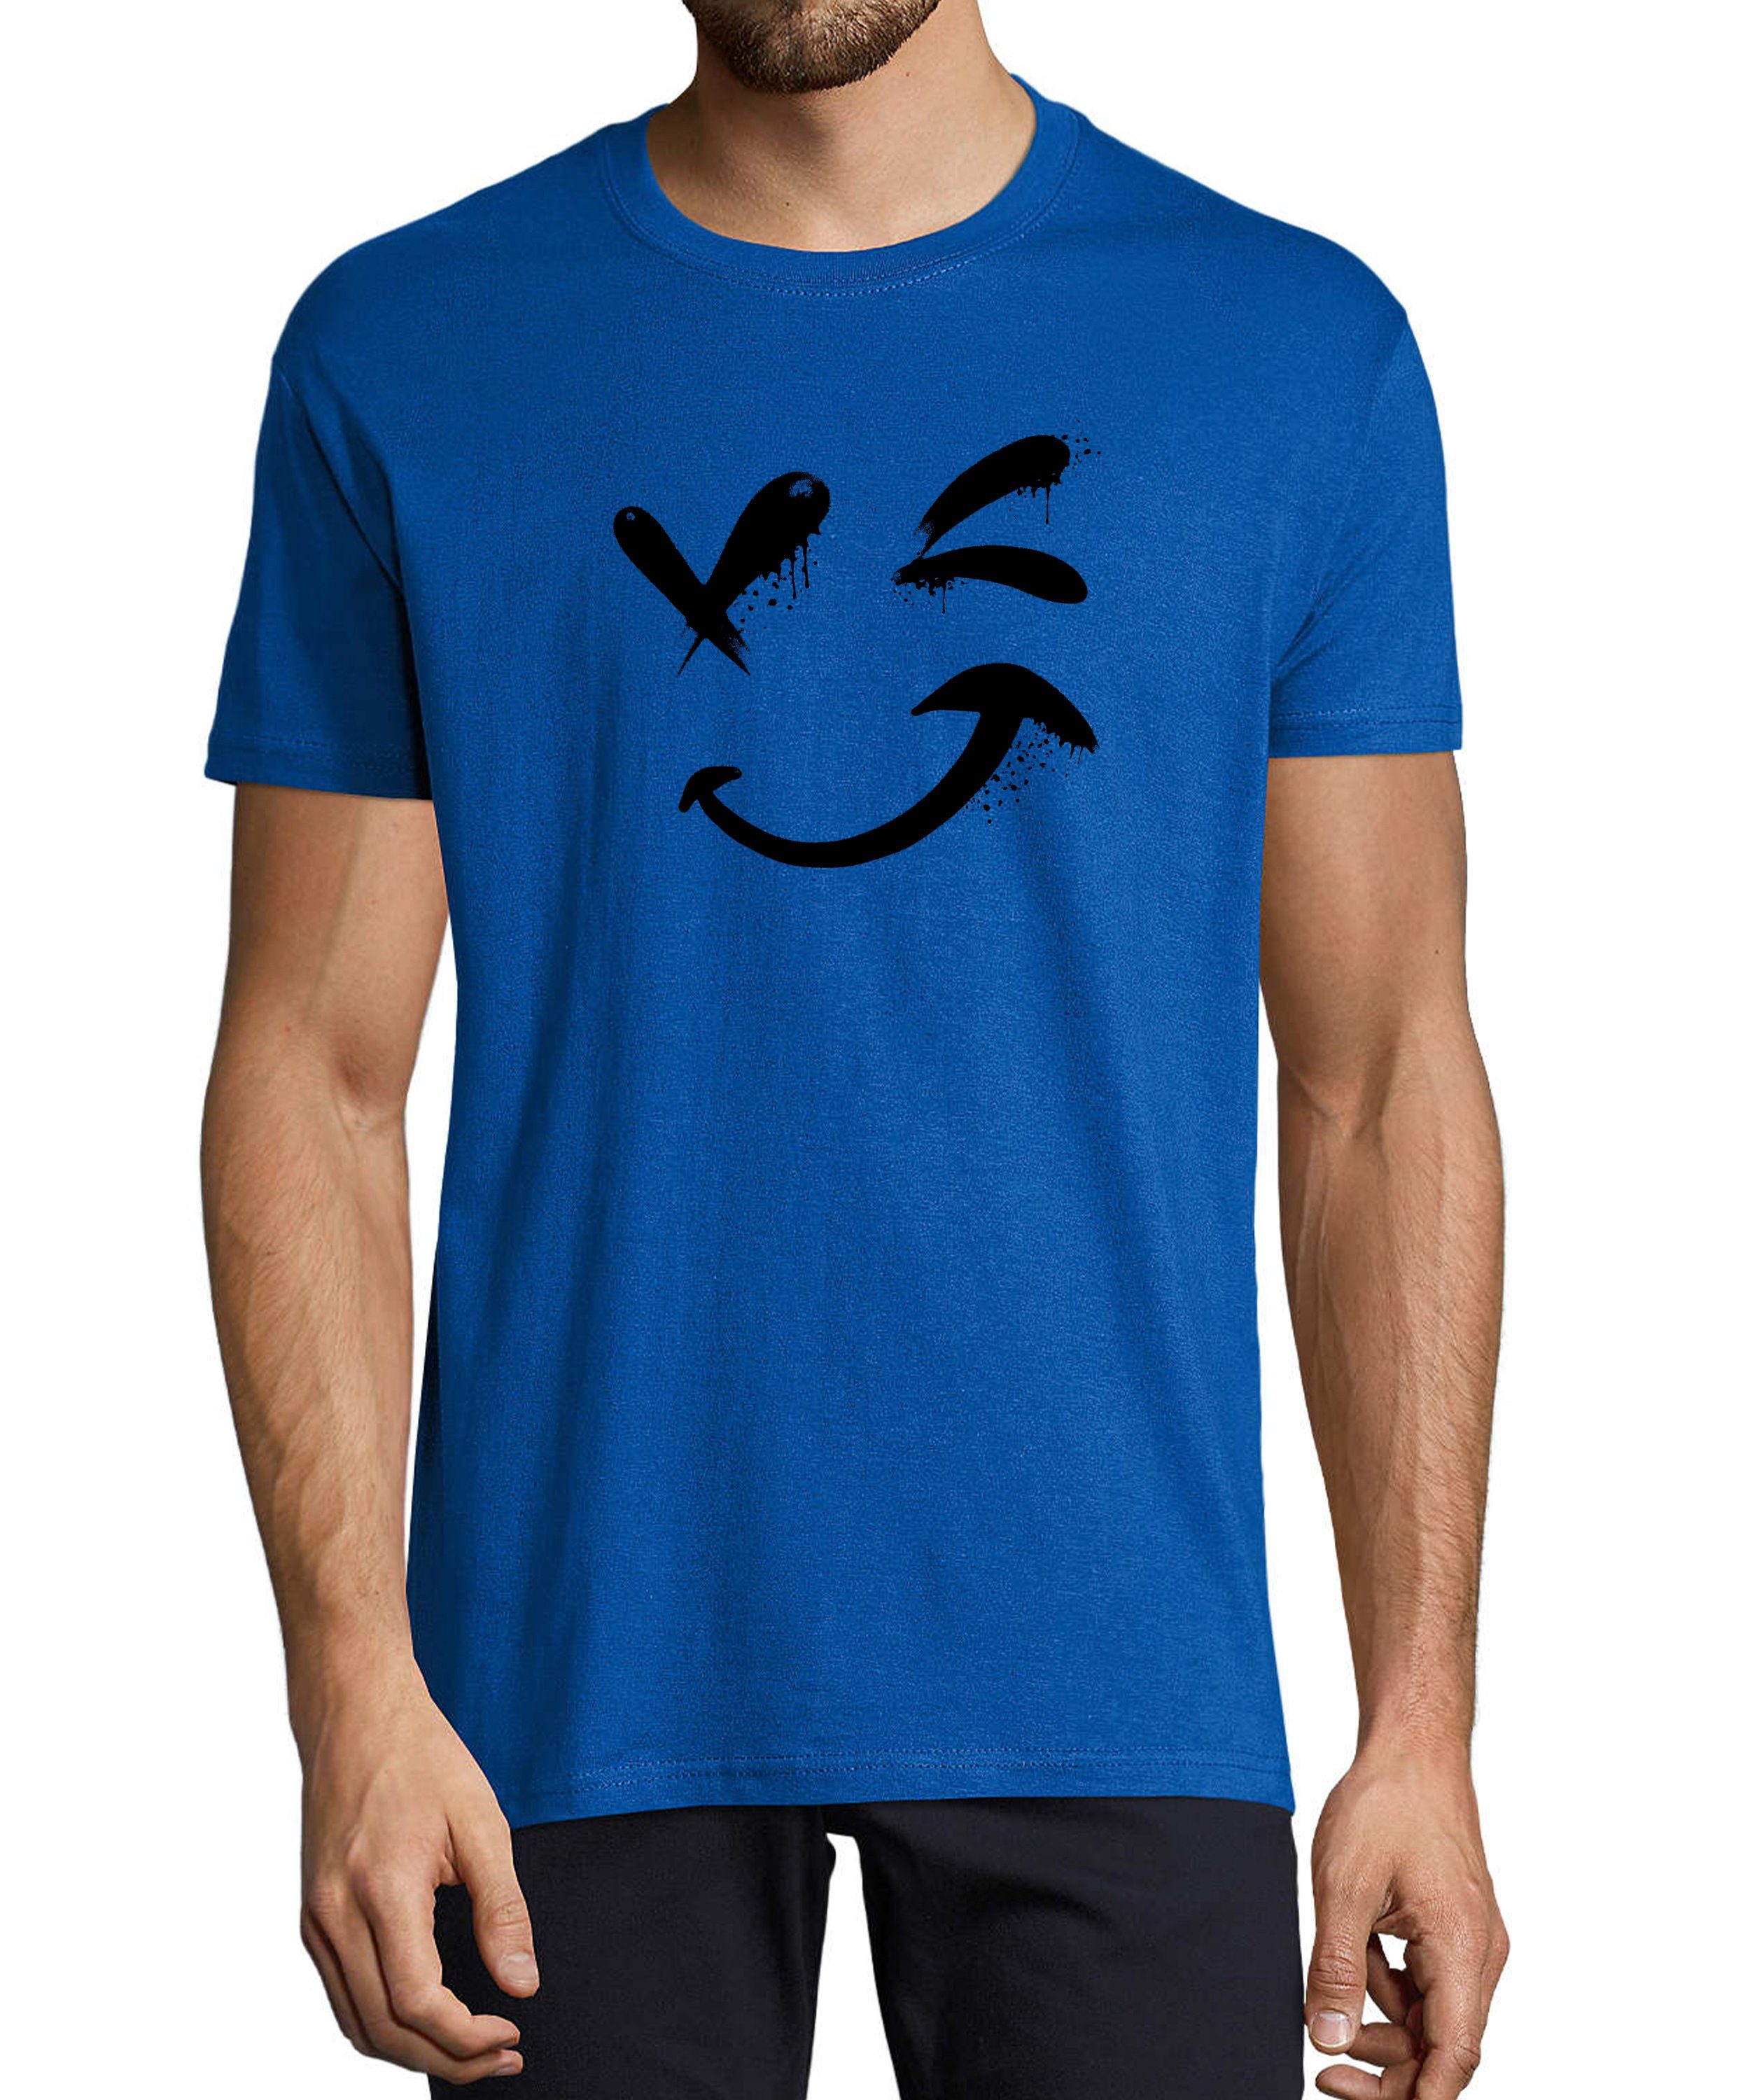 MyDesign24 T-Shirt Herren Smiley Print Shirt - Zwinkernder Smiley Baumwollshirt mit Aufdruck Regular Fit, i294 royal blau